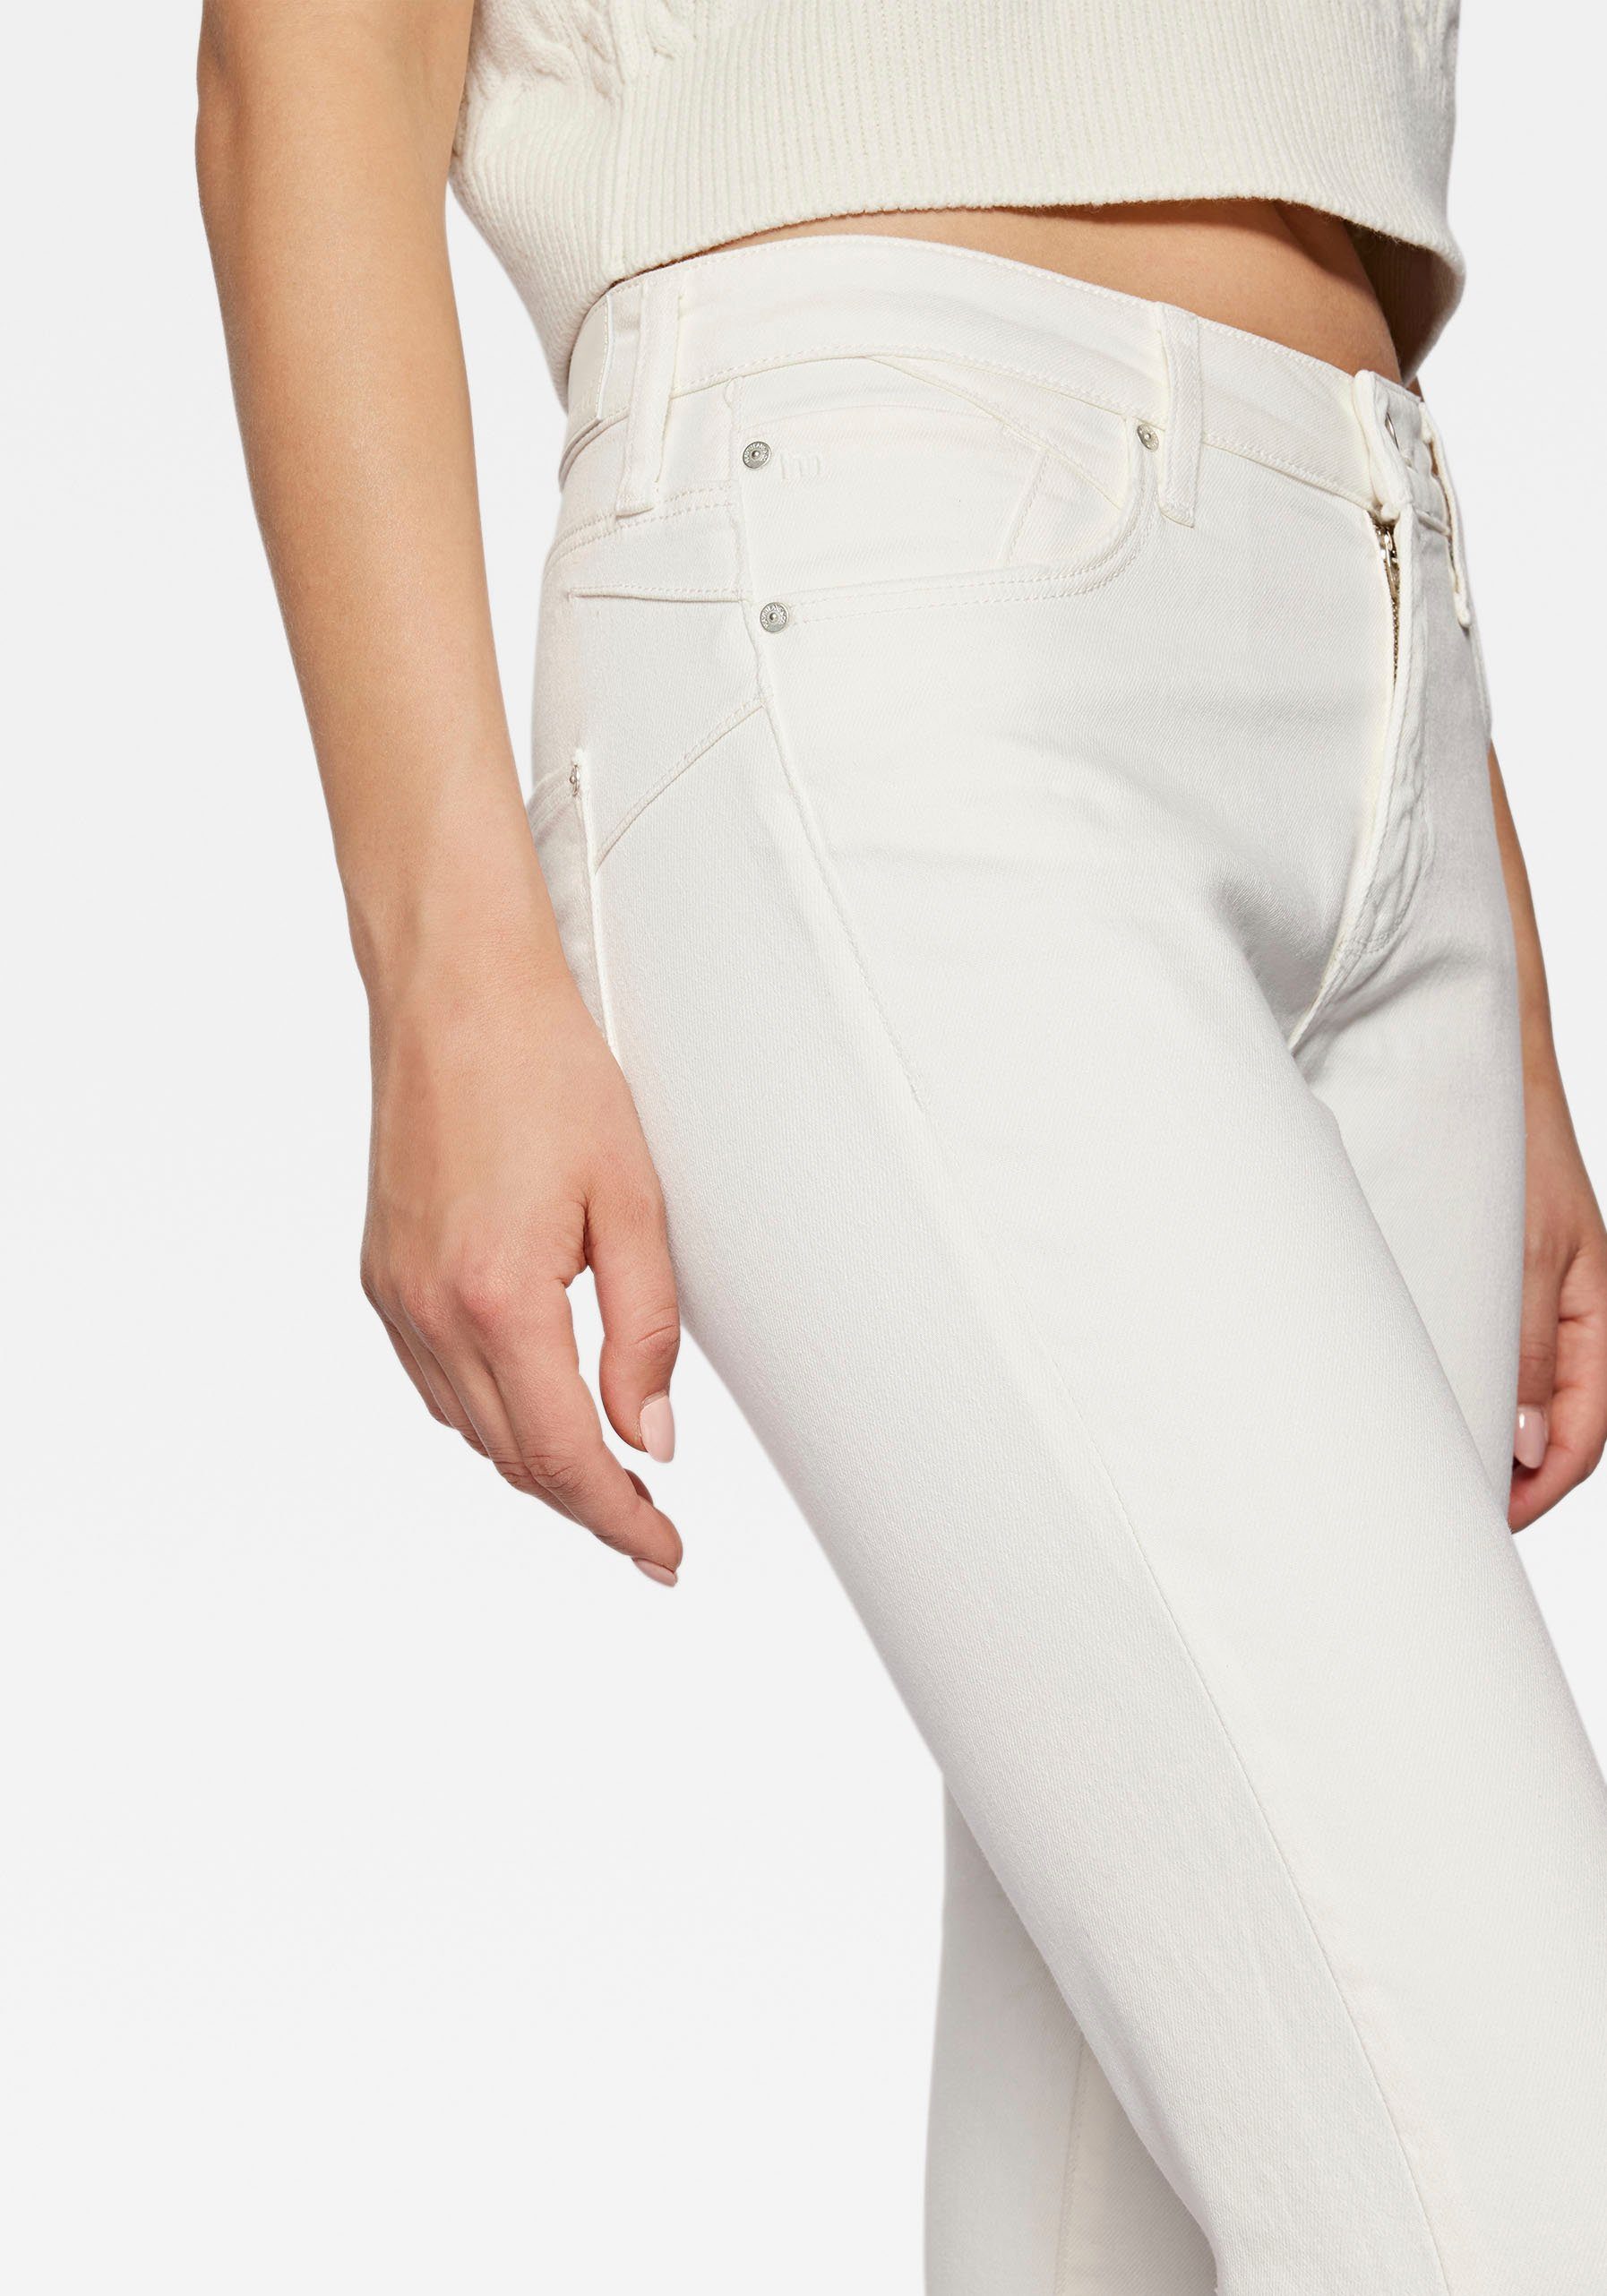 Mavi hochwertiger Verarbeitung dank Slim-fit-Jeans trageangenehmer Stretchdenim white